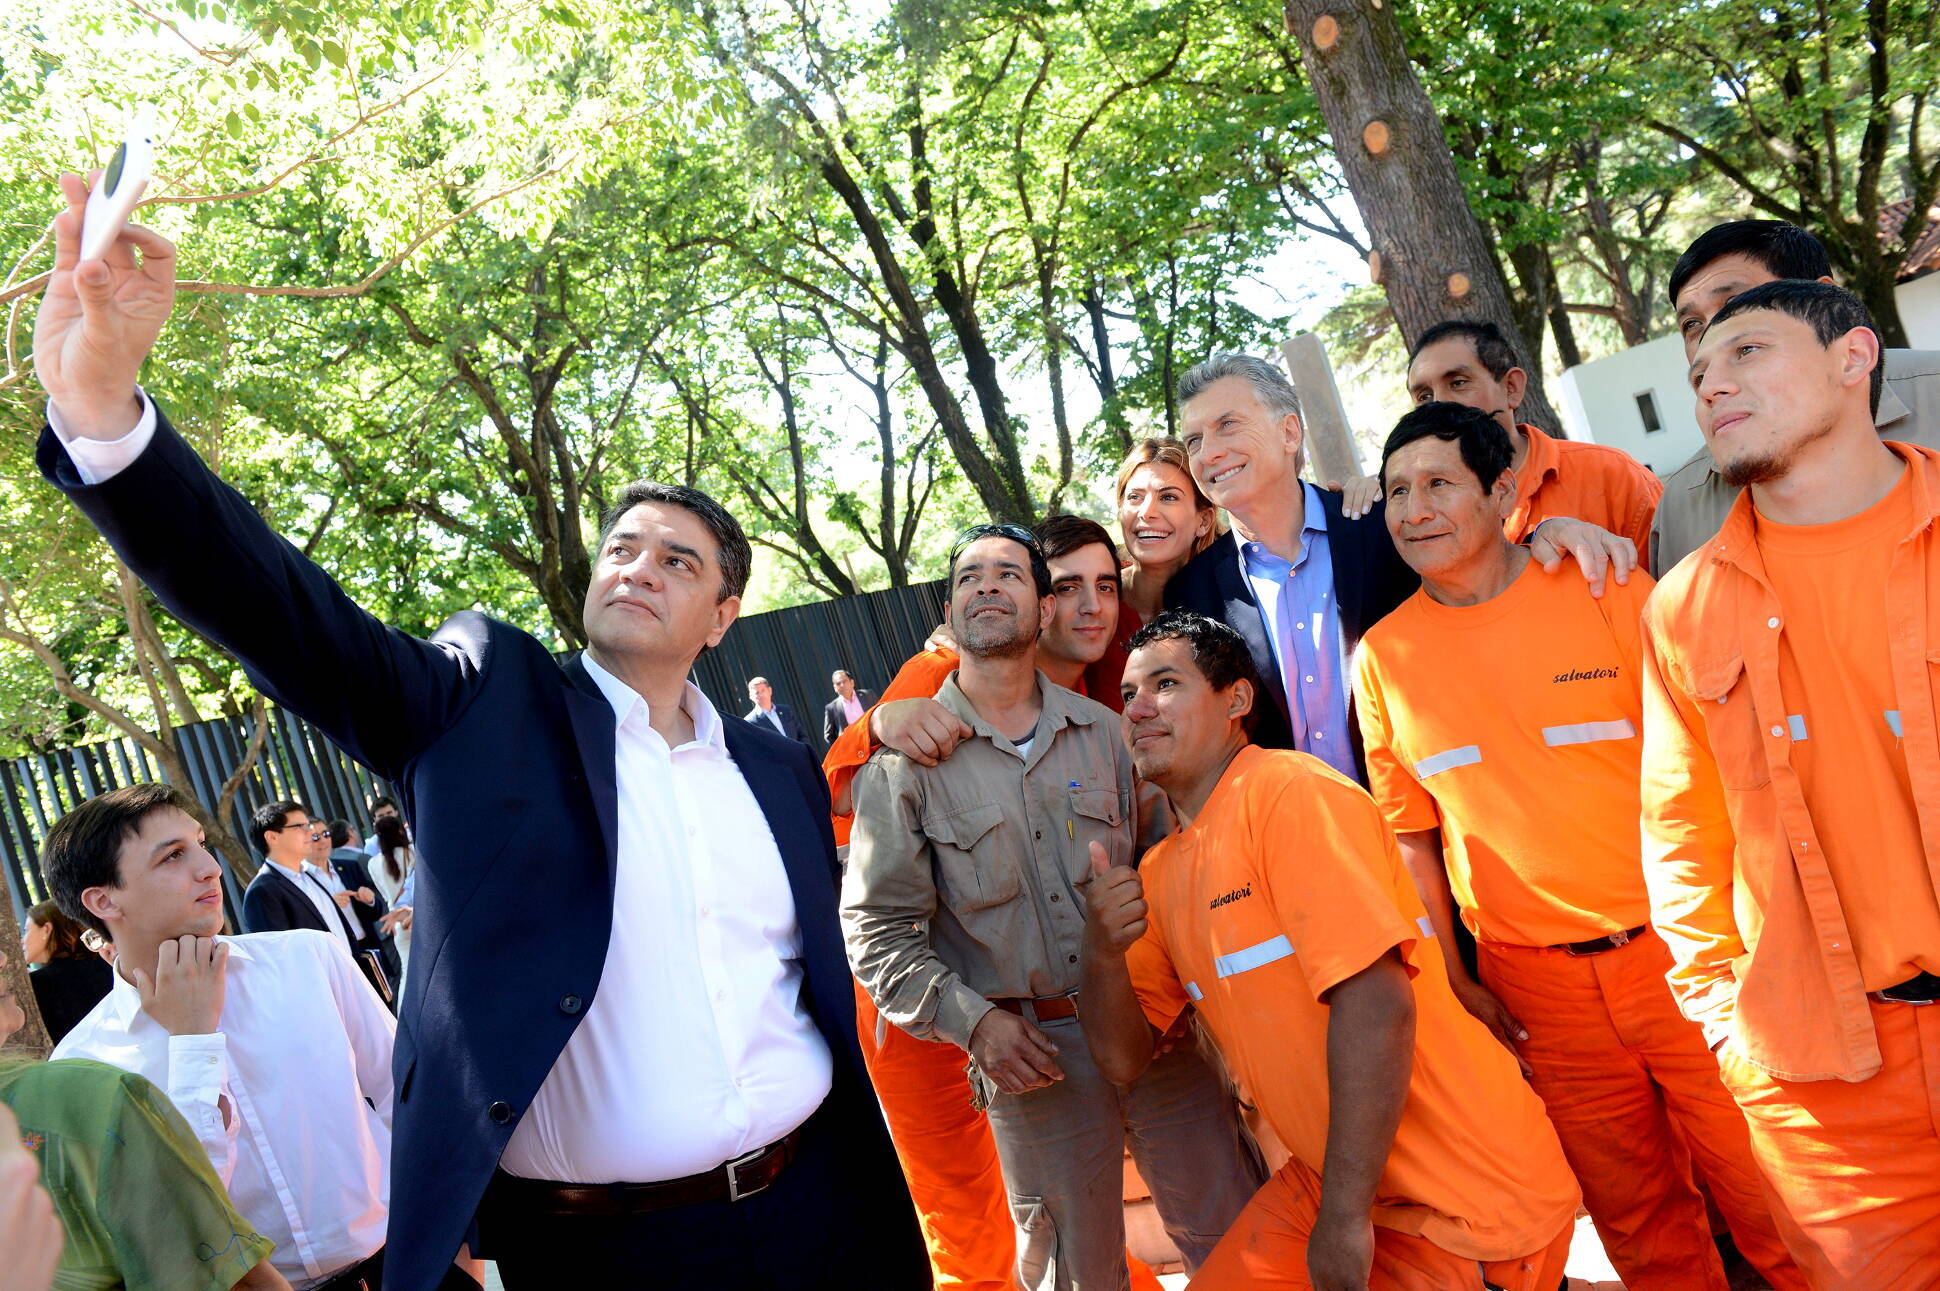 El Presidente inauguró el Paseo de la República, un espacio abierto al público junto a la Quinta de Olivos